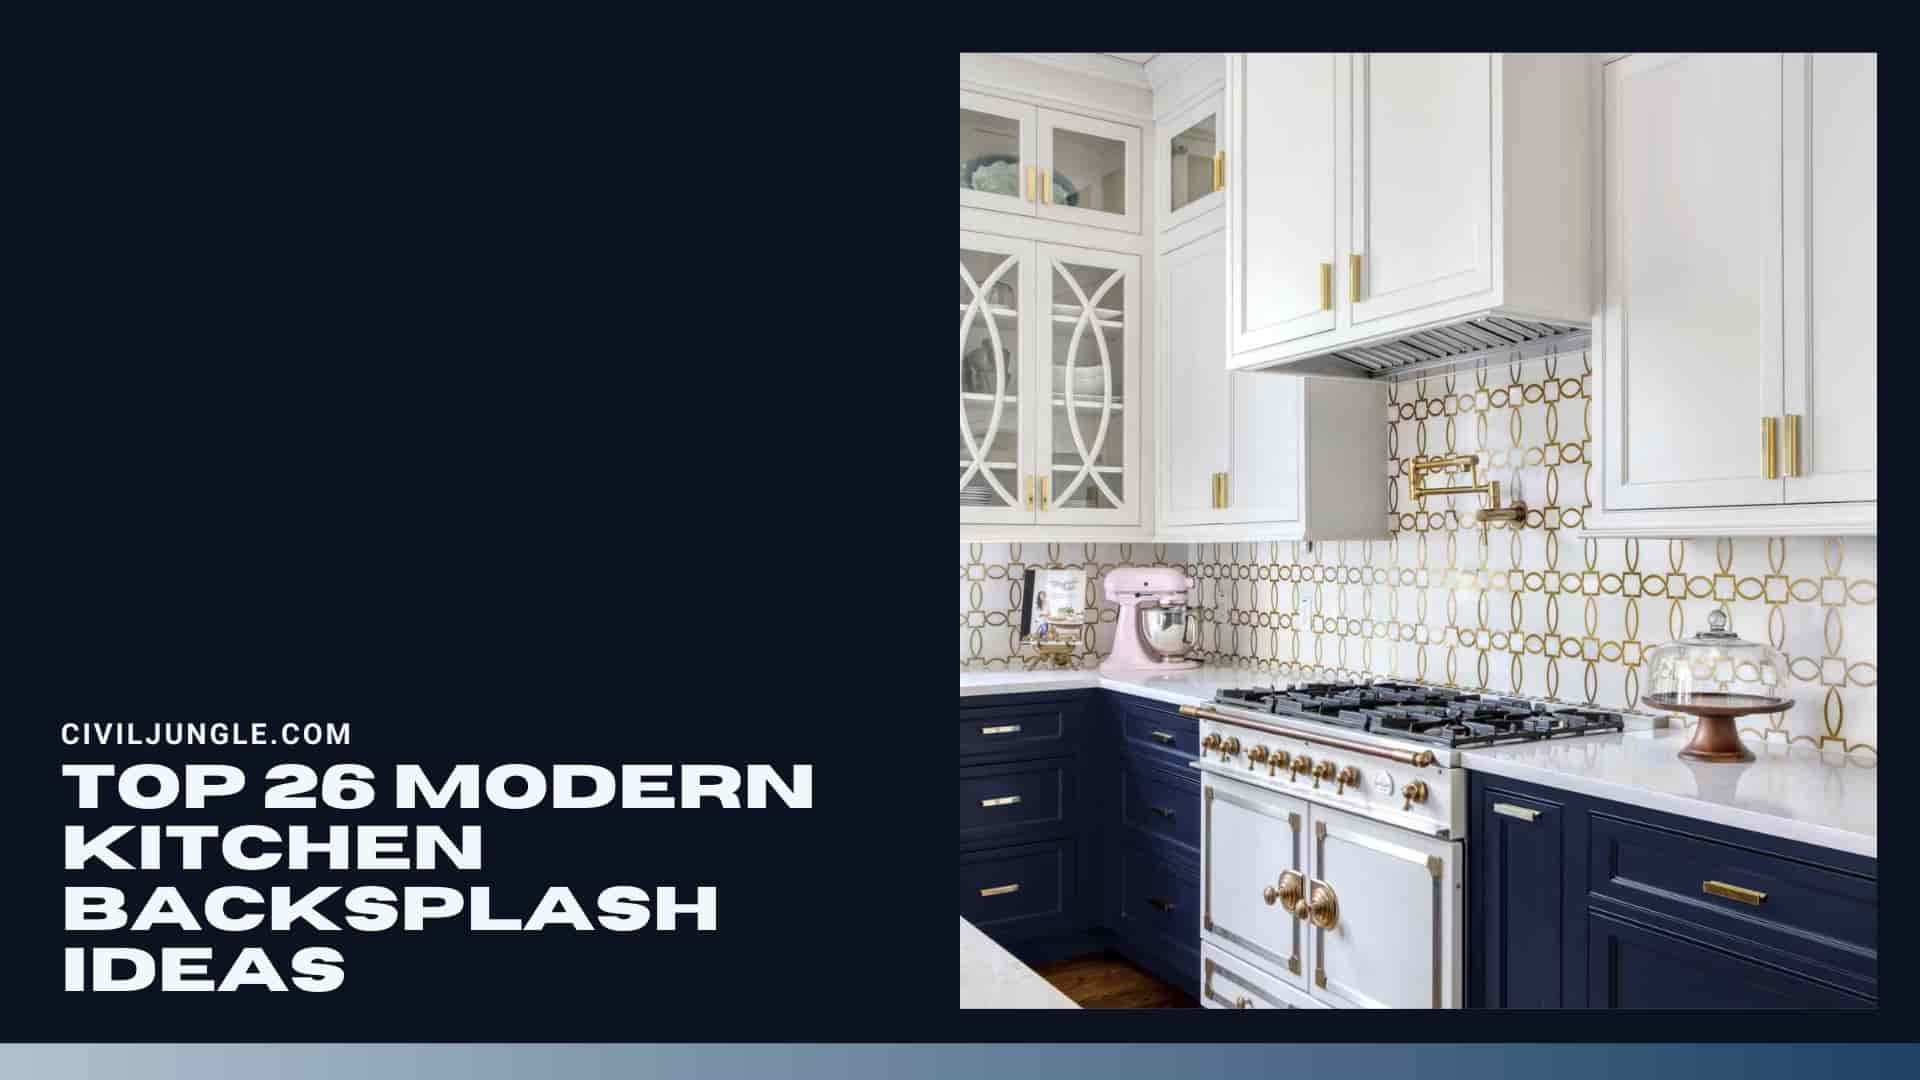 Top 26 Modern Kitchen Backsplash Ideas